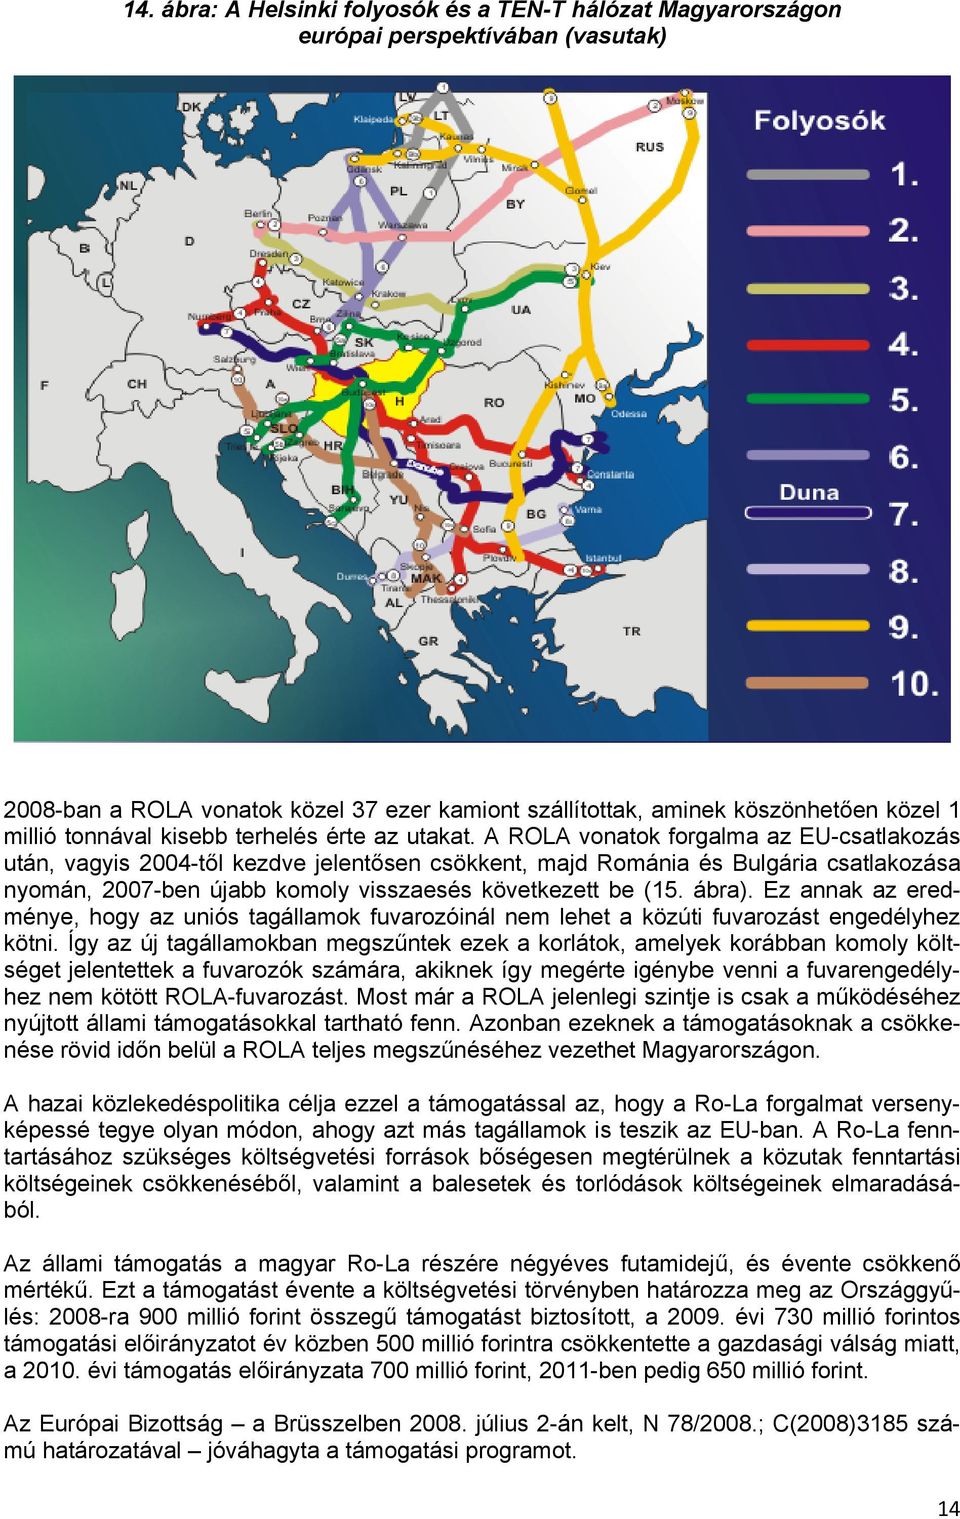 A ROLA vonatok forgalma az EU-csatlakozás után, vagyis 2004-től kezdve jelentősen csökkent, majd Románia és Bulgária csatlakozása nyomán, 2007-ben újabb komoly visszaesés következett be (15. ábra).